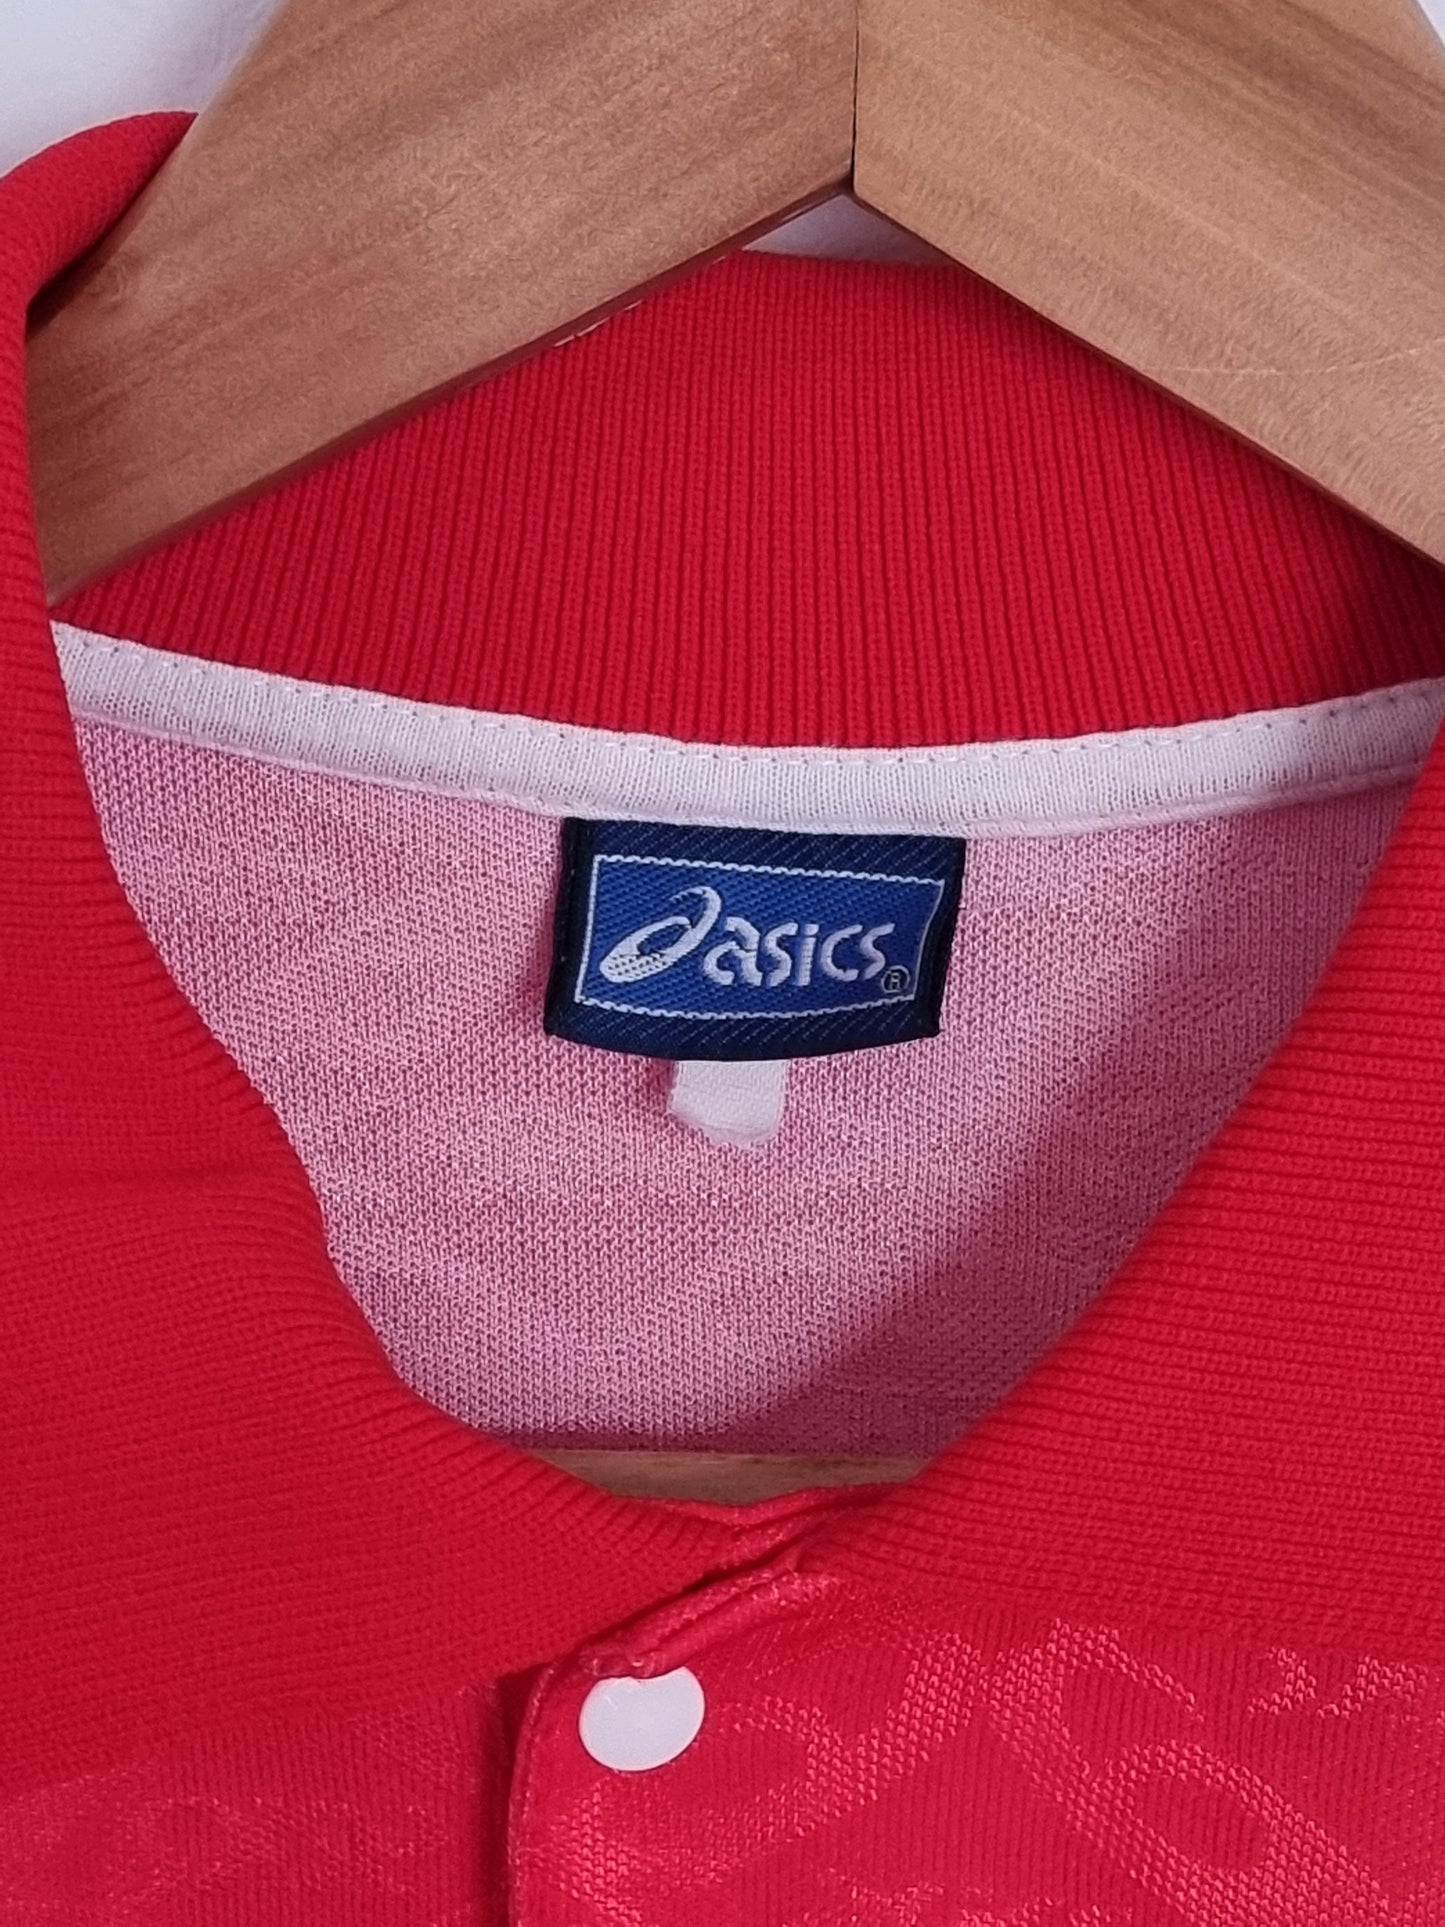 Asics SPAL 94/95 Long Sleeve Match Issue Away Shirt XL